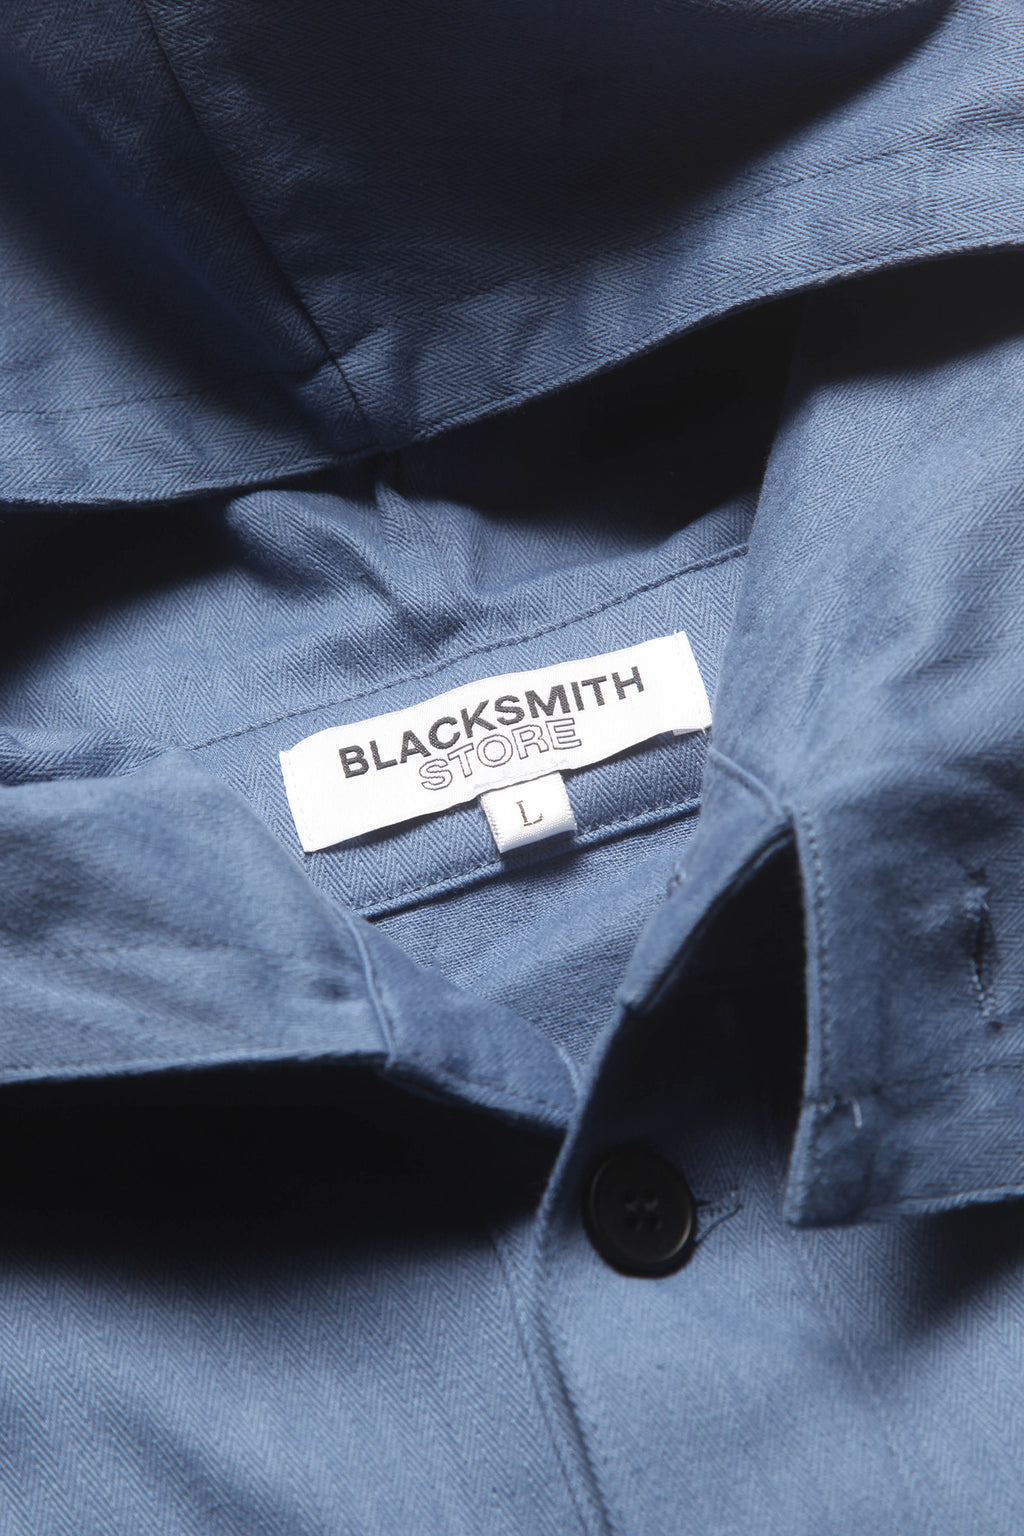 Blacksmith - USN Herringbone Smock - Blue